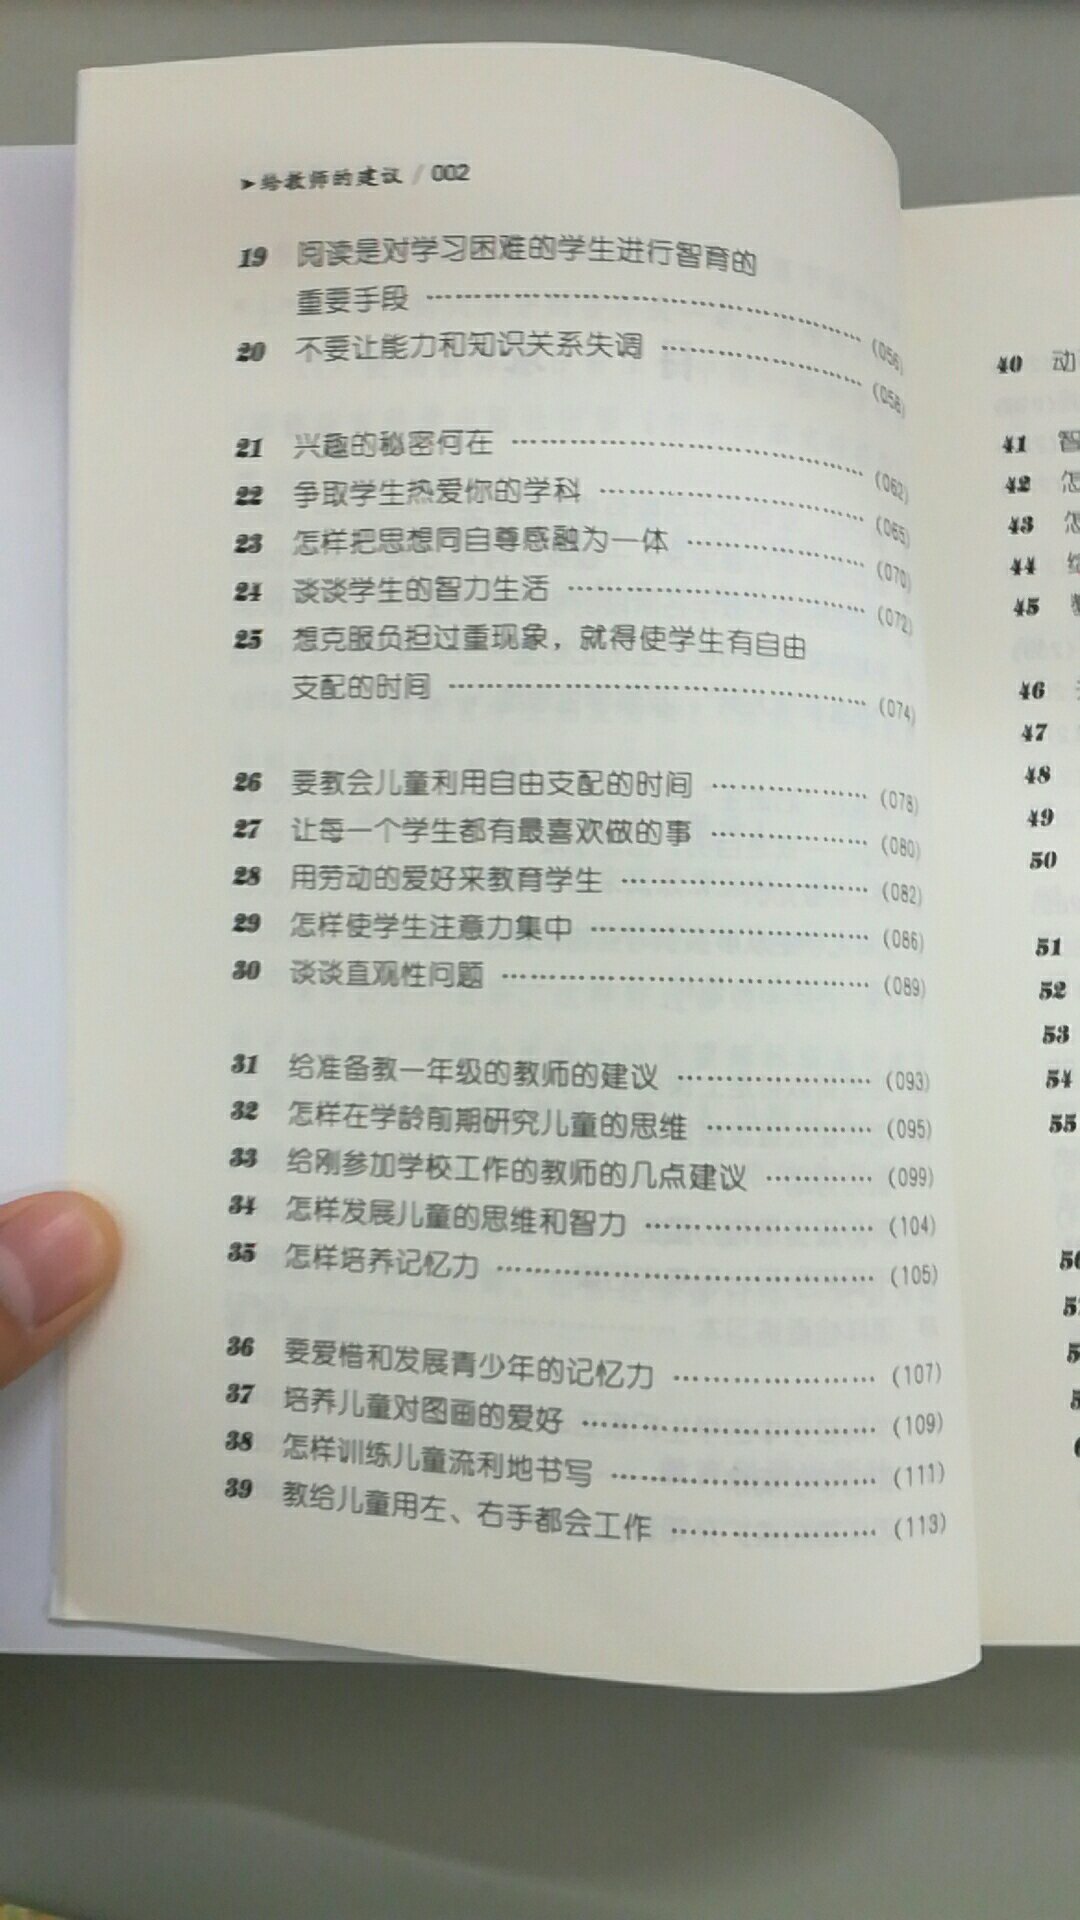 教育学方面的著作，尹建莉推荐书目。